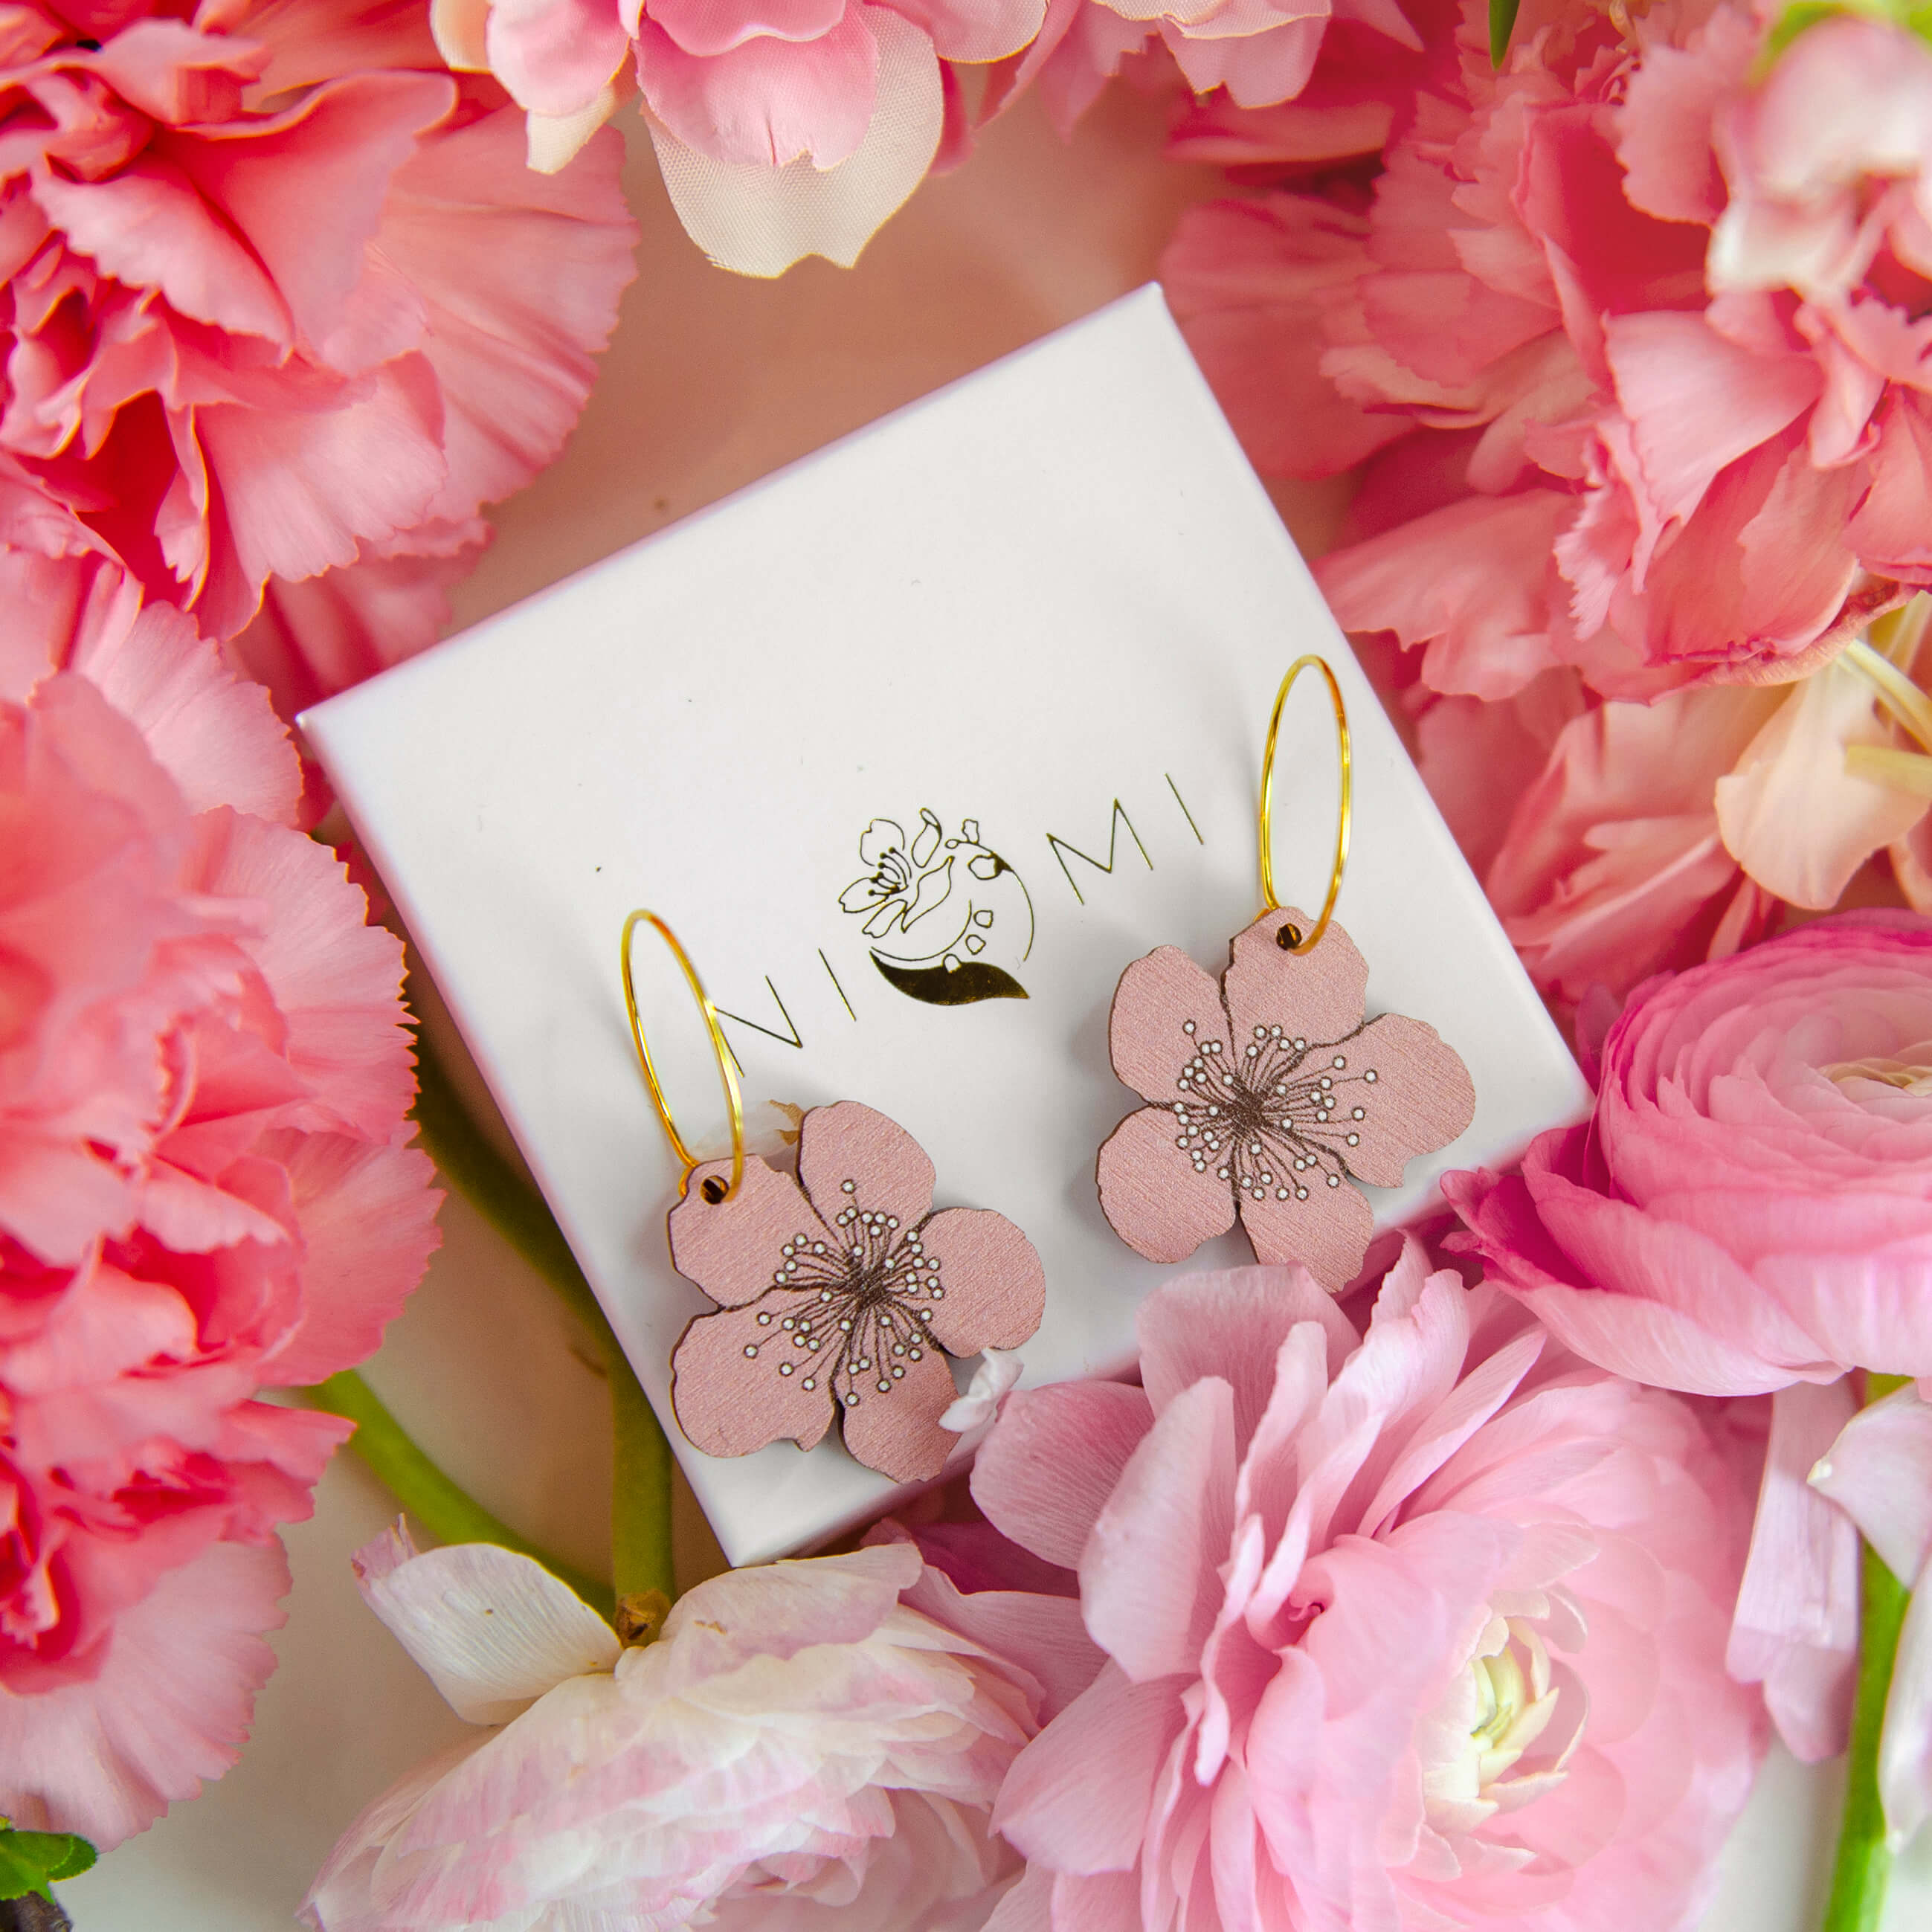 Ihana sakura korvakoru. Sakura (桜) tarkoittaa japaniksi kirsikankukkaa ja se symboloi uuden alkua ja elämän katoavaisuudessa piilevää kauneutta. Nämä kauniit sakura korvakorut leijailevat korvasi juurella ja viimeistelevät niin arki- kuin juhlailmeen. Voisiko tässä olla myös jollekin tärkeälle erittäin hyvä ja kaunis lahjaidea? Rakkaudella Suomessa käsintehty Sakura korvakoru.